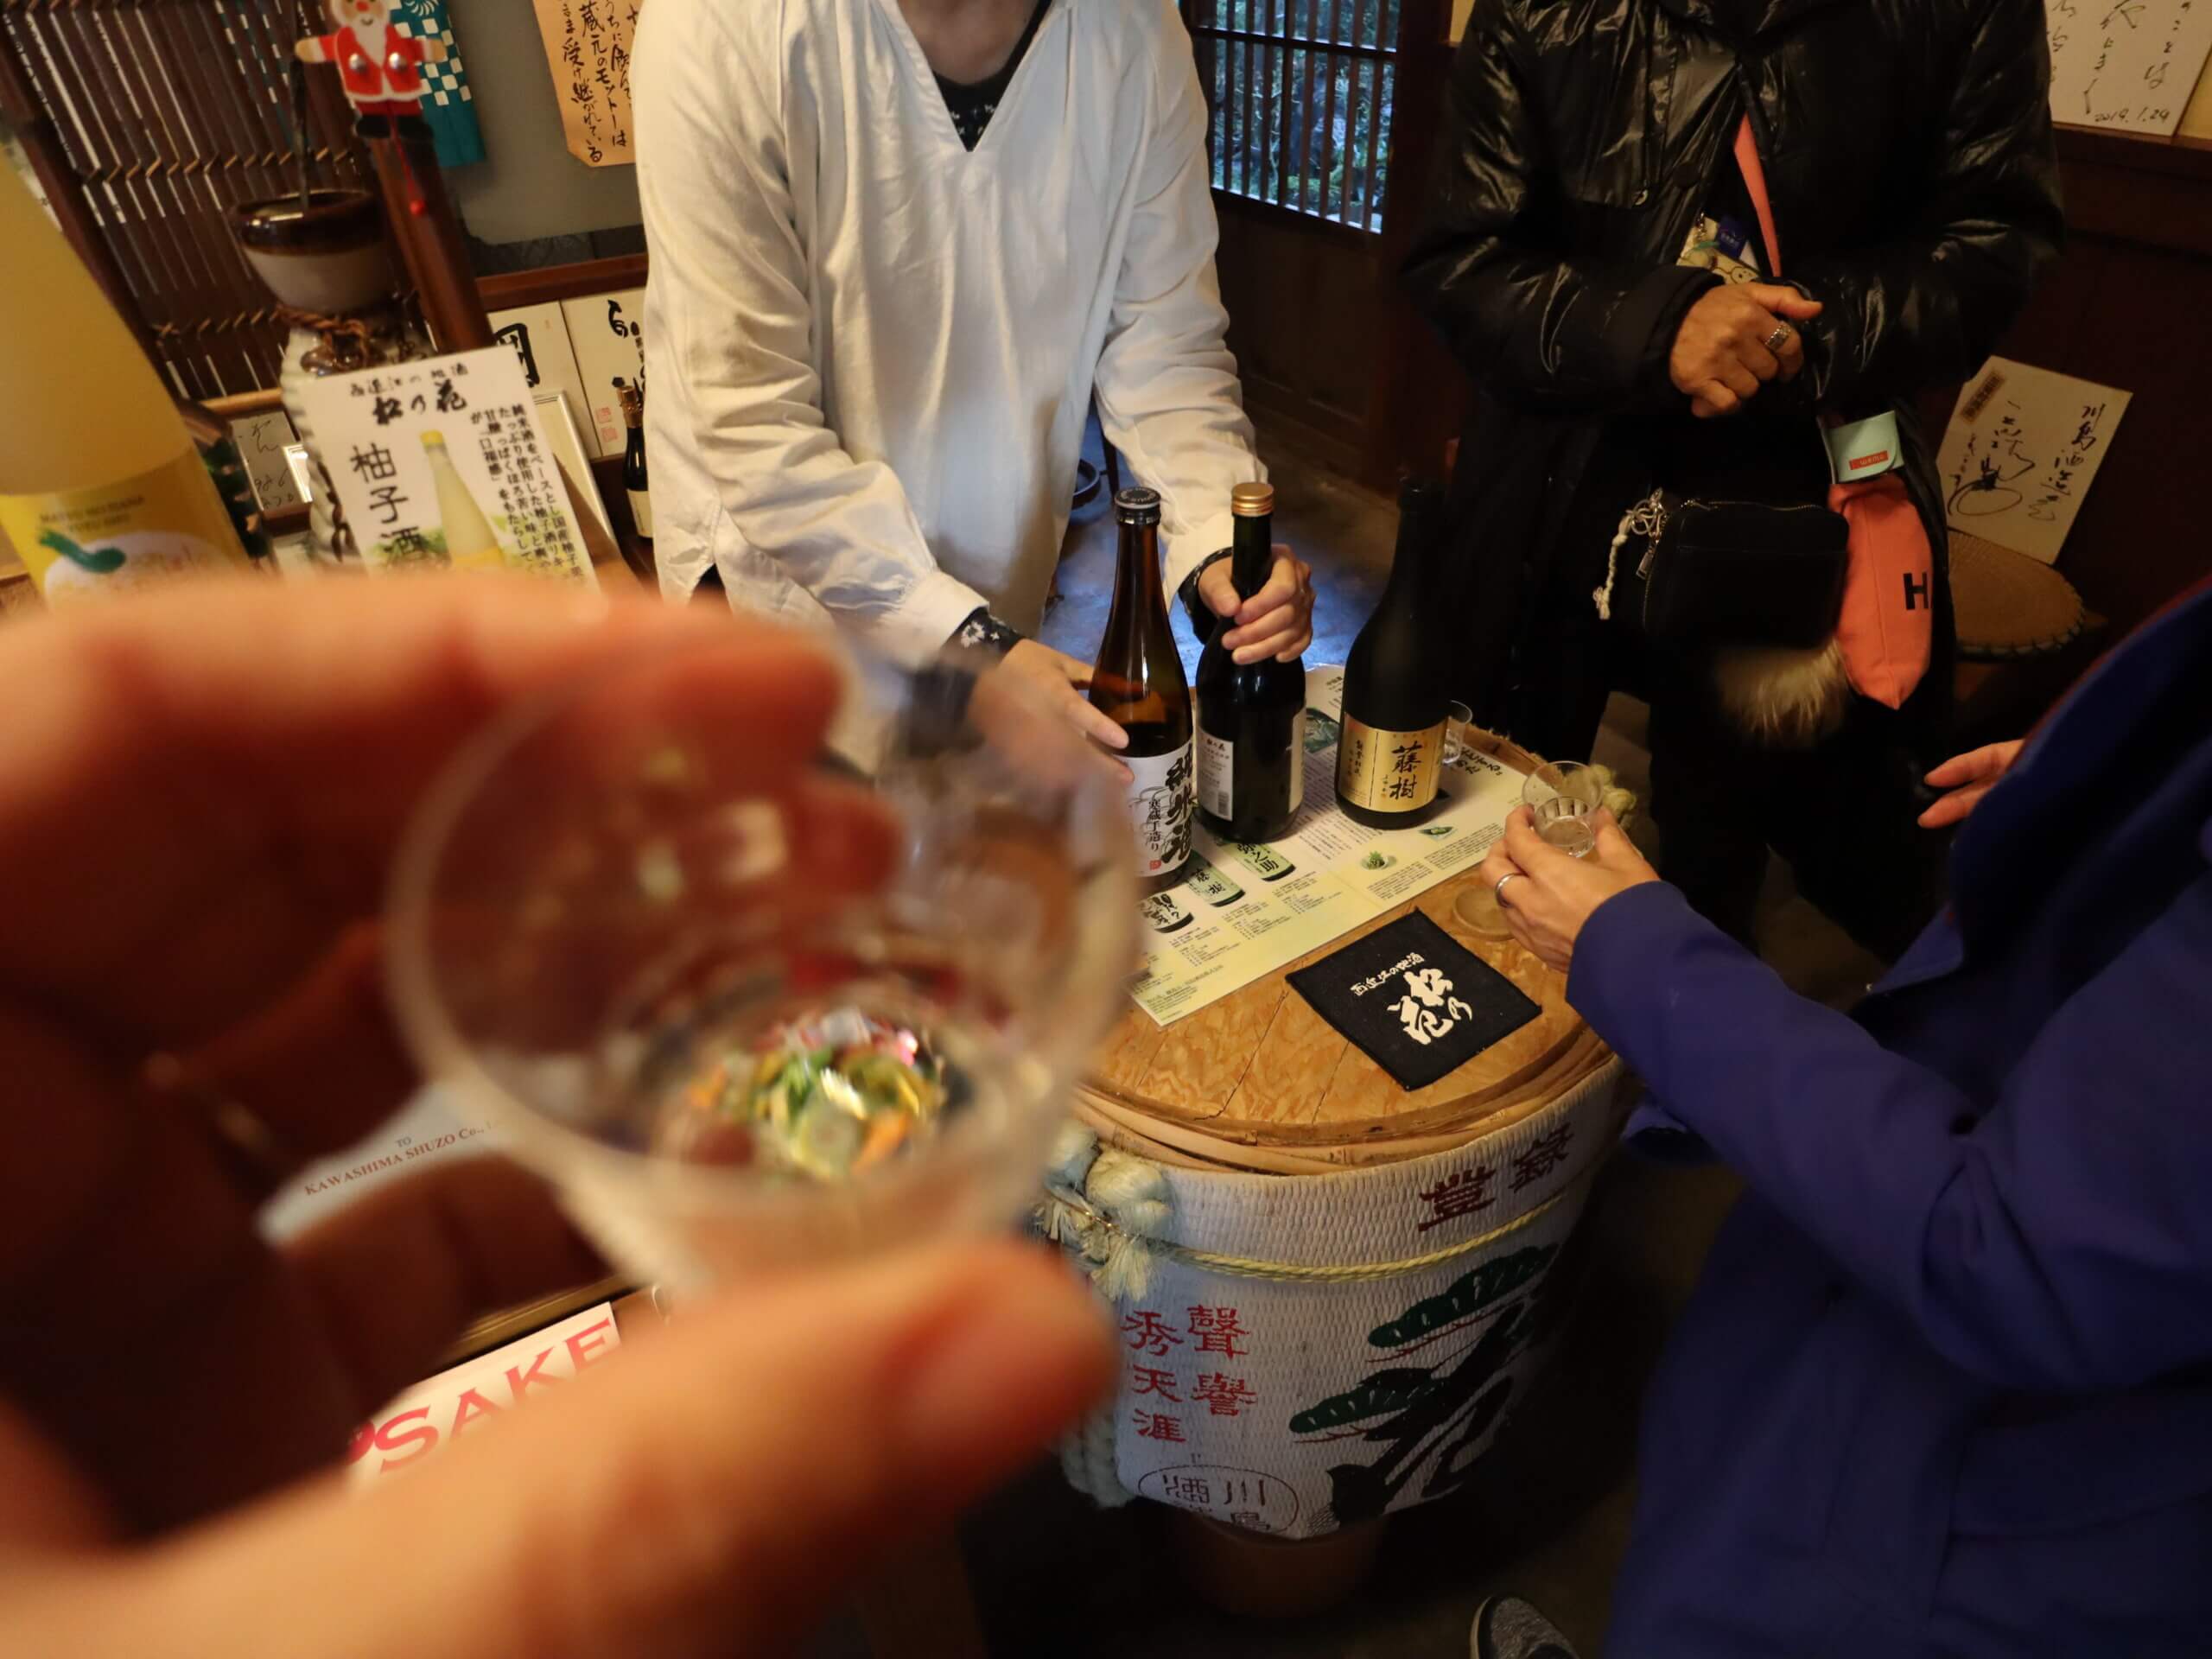 Reasons to visit Lake Biwa, Shiga include trying sake at  Kawashima Sake Brewery